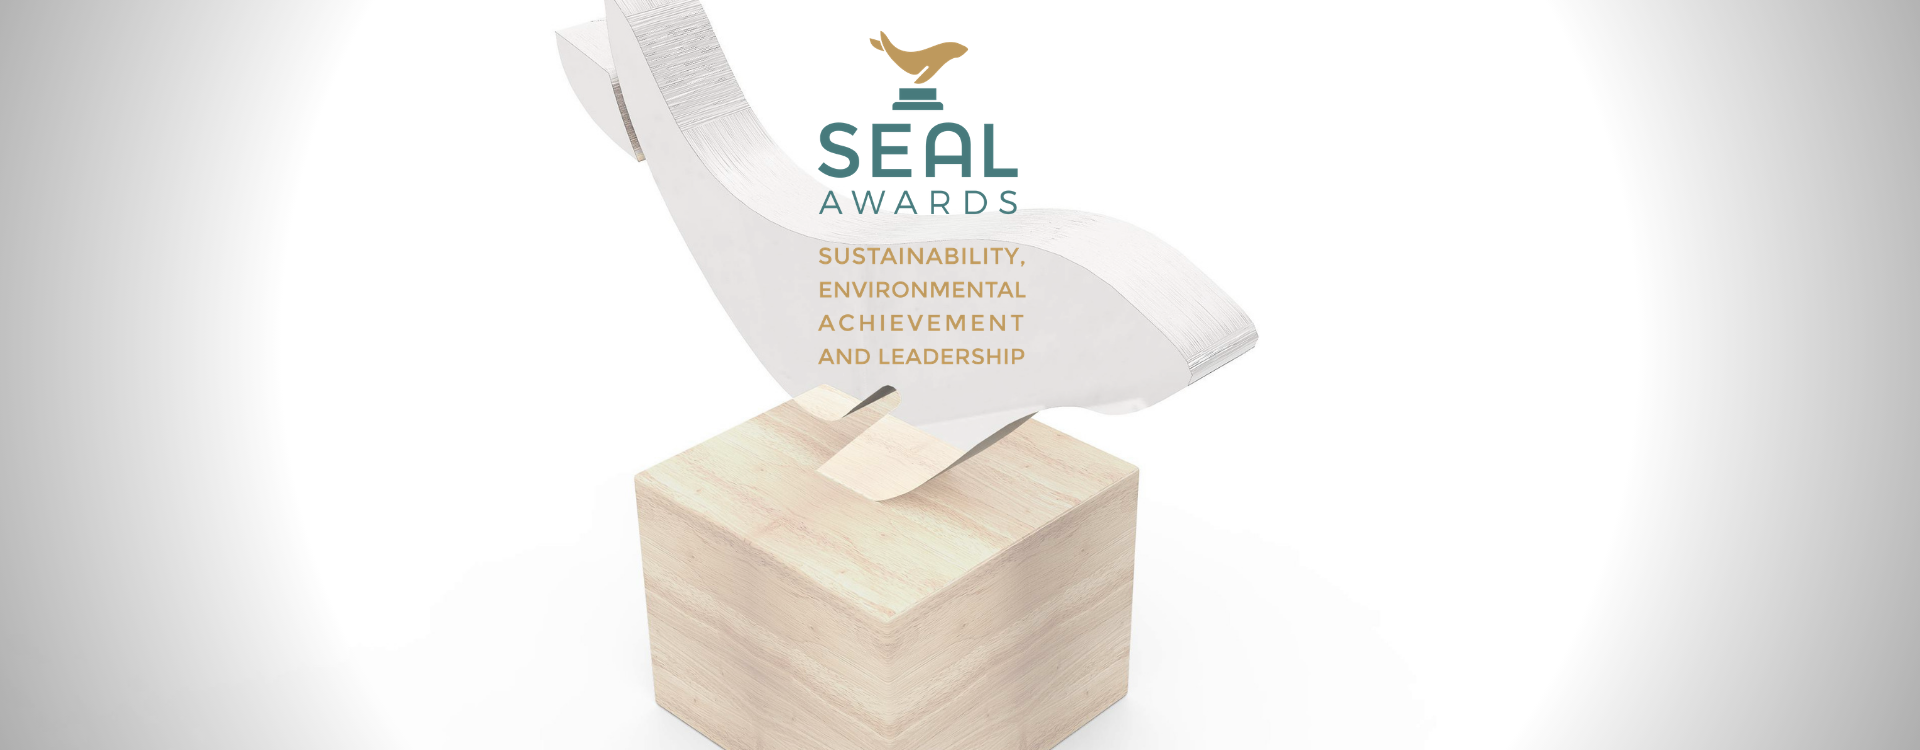 Resolute удостоена награды за инновации в области устойчивого развития на конкурсе SEAL Business Sustainability Awards